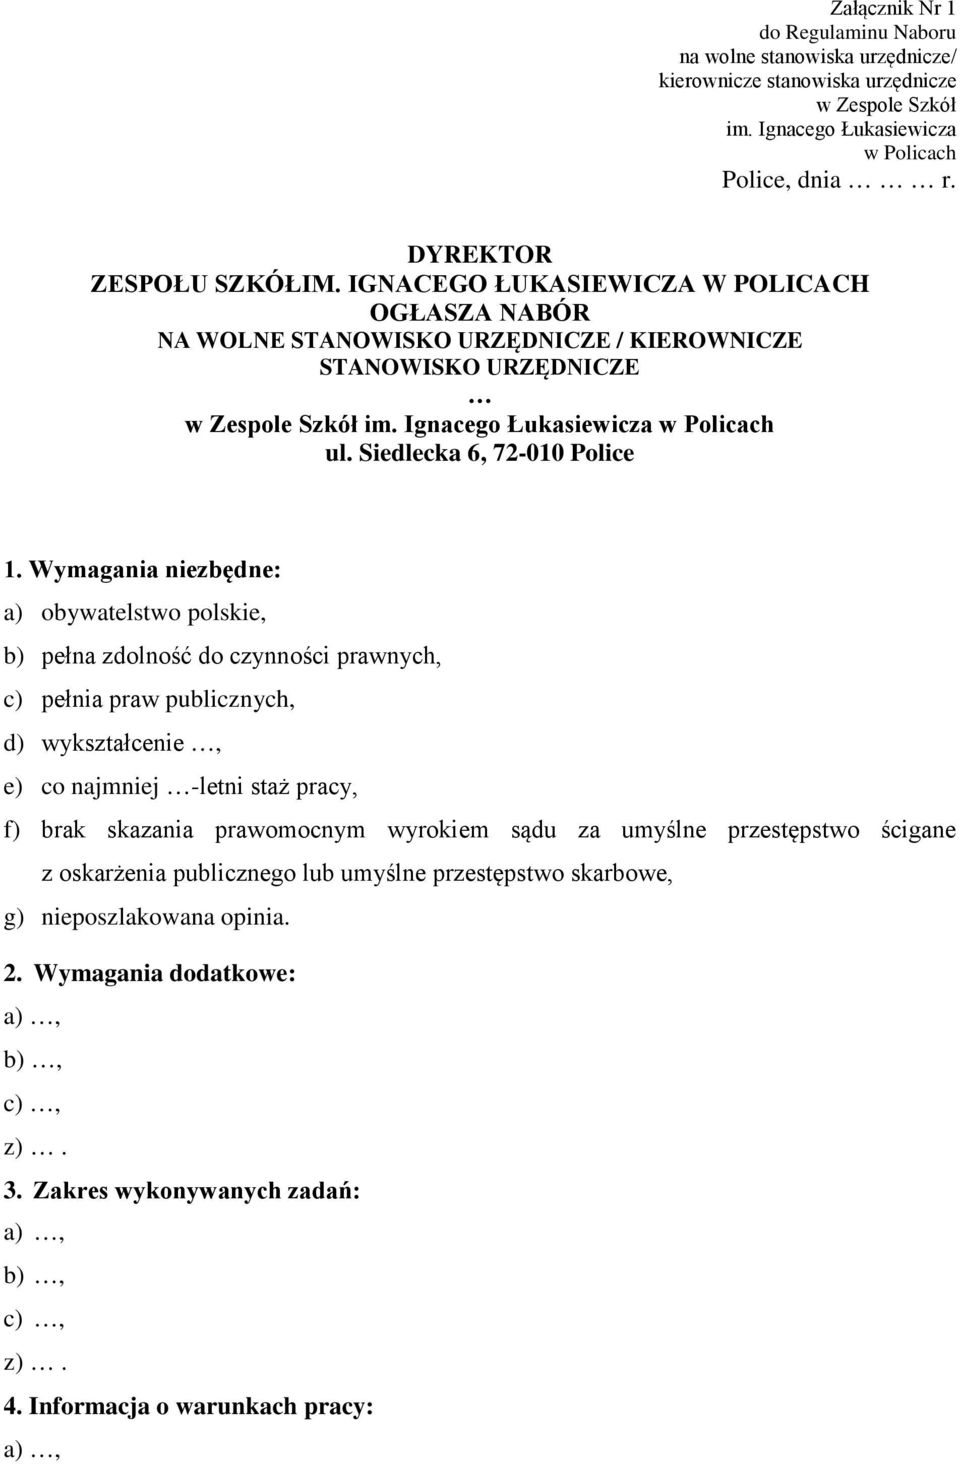 Wymagania niezbędne: a) obywatelstwo polskie, b) pełna zdolność do czynności prawnych, c) pełnia praw publicznych, d) wykształcenie, e) co najmniej -letni staż pracy, f) brak skazania prawomocnym